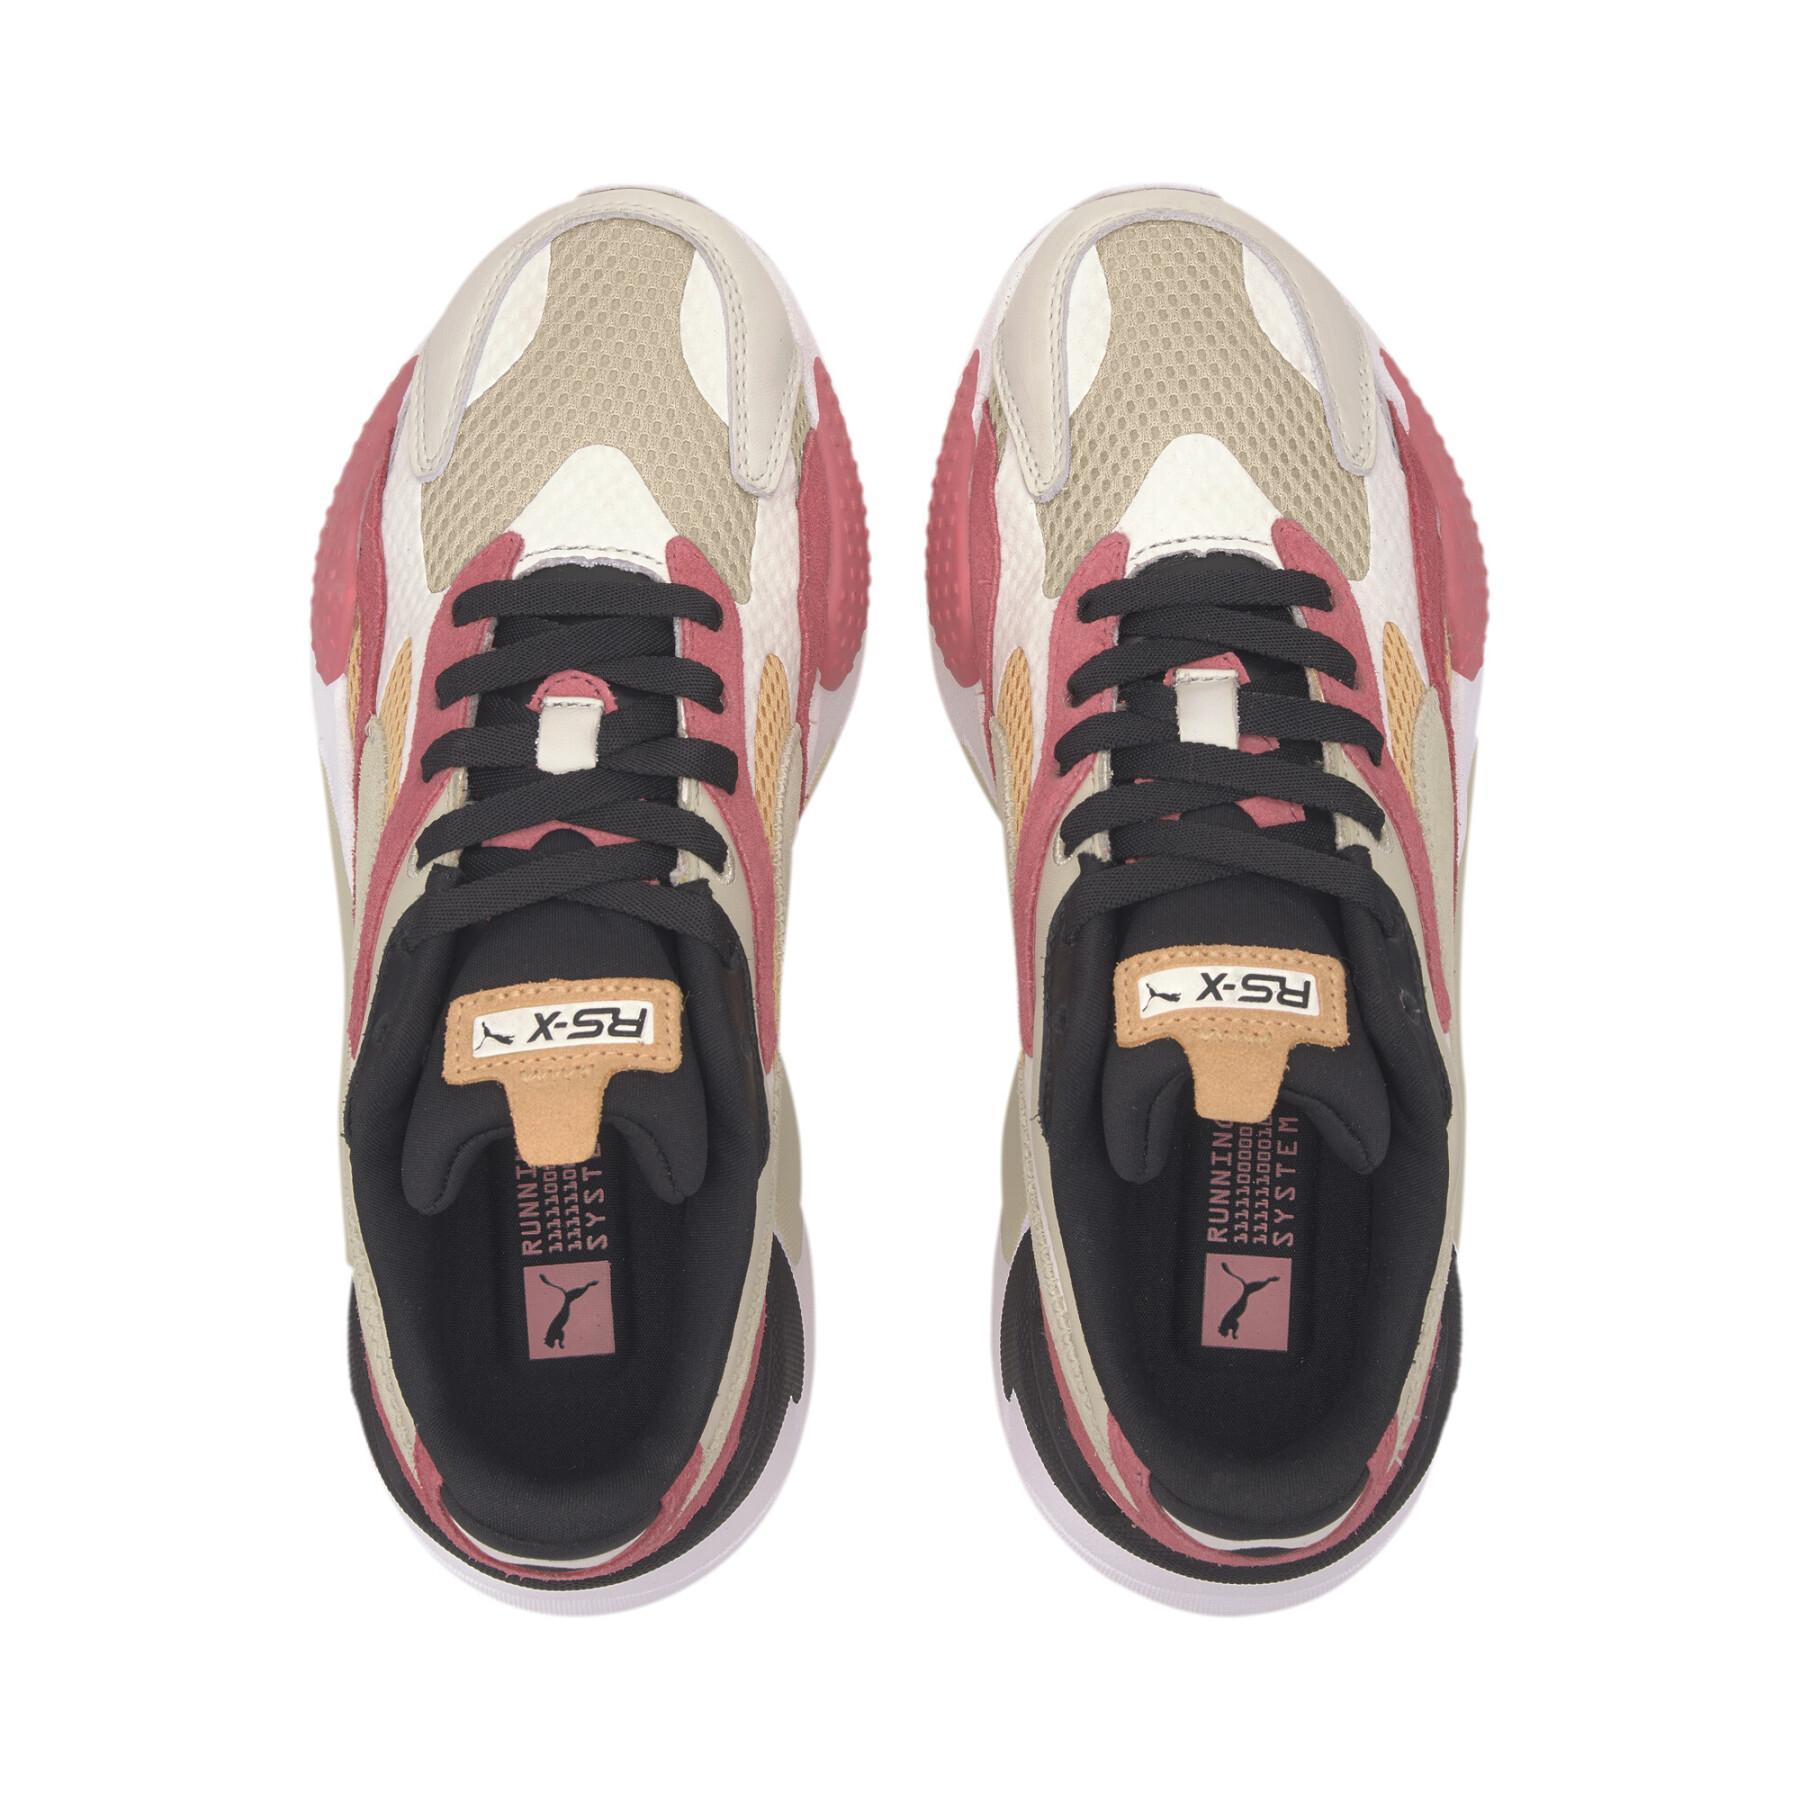 Zapatillas de deporte para mujeres Puma Rs-X³ mesh pop